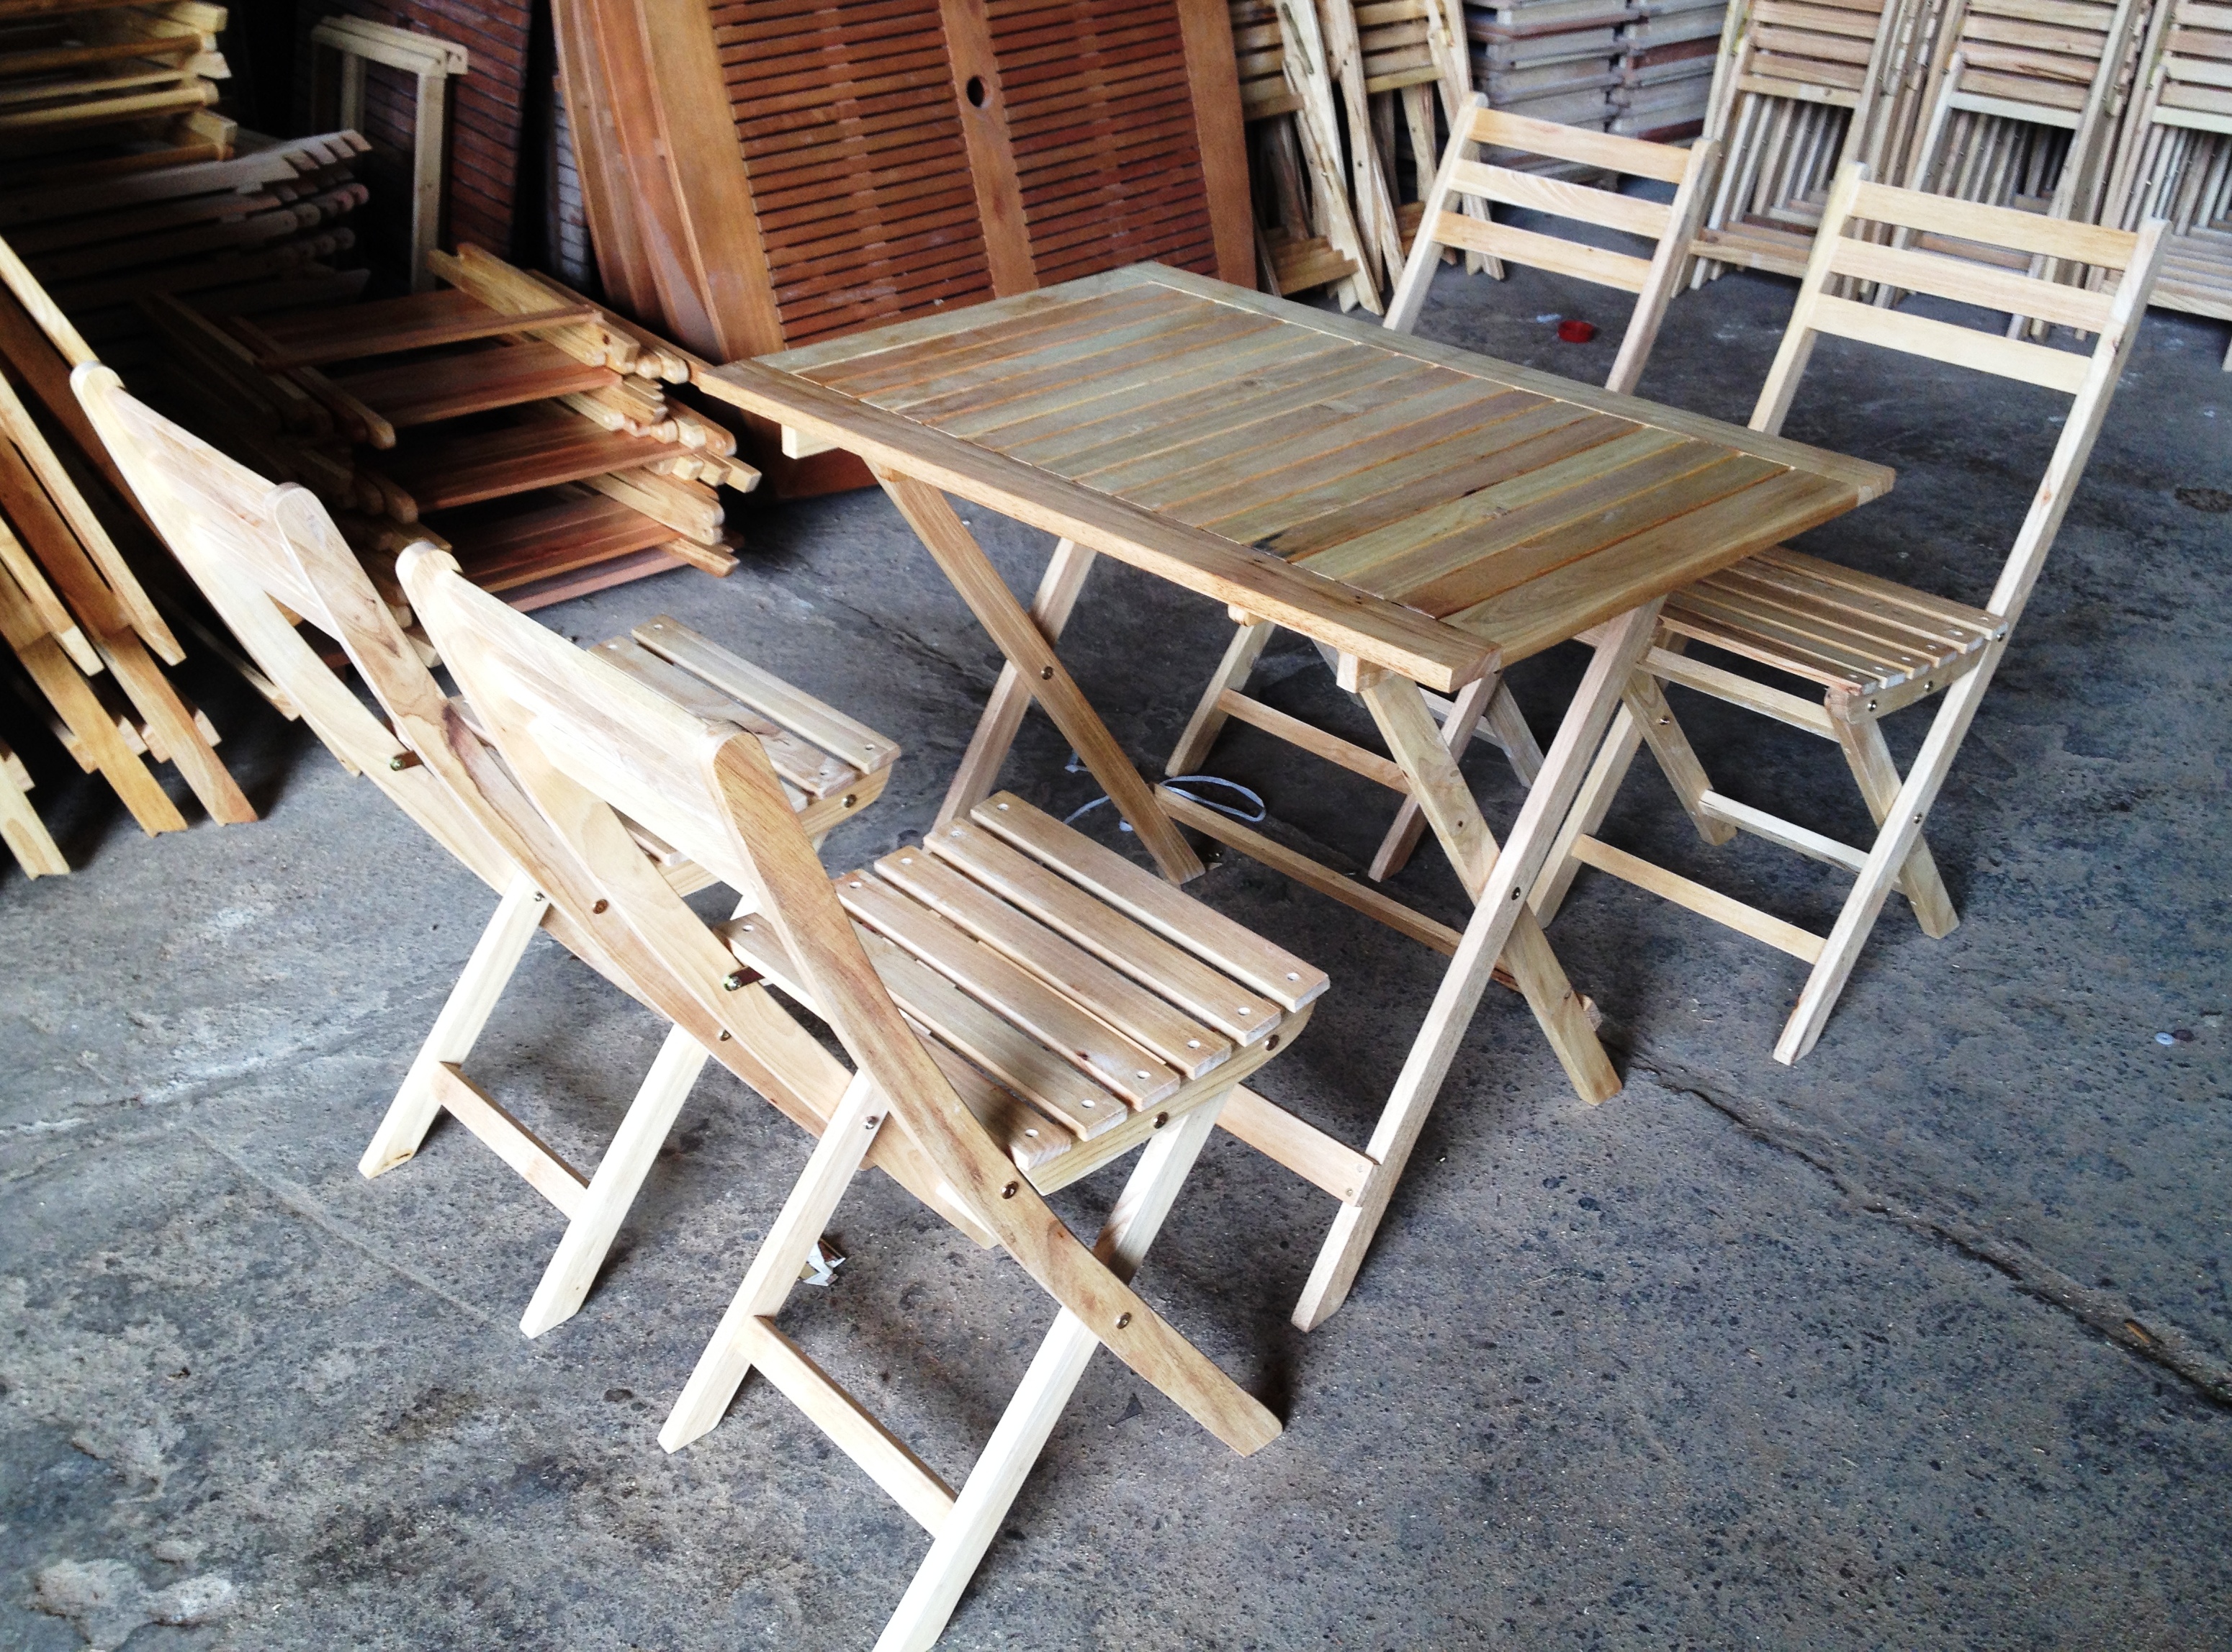 Cung cấp bàn ghế gỗ cafe, quán ăn . . . nội thất giá rẻ nhất ở Bình Định 886869344955210